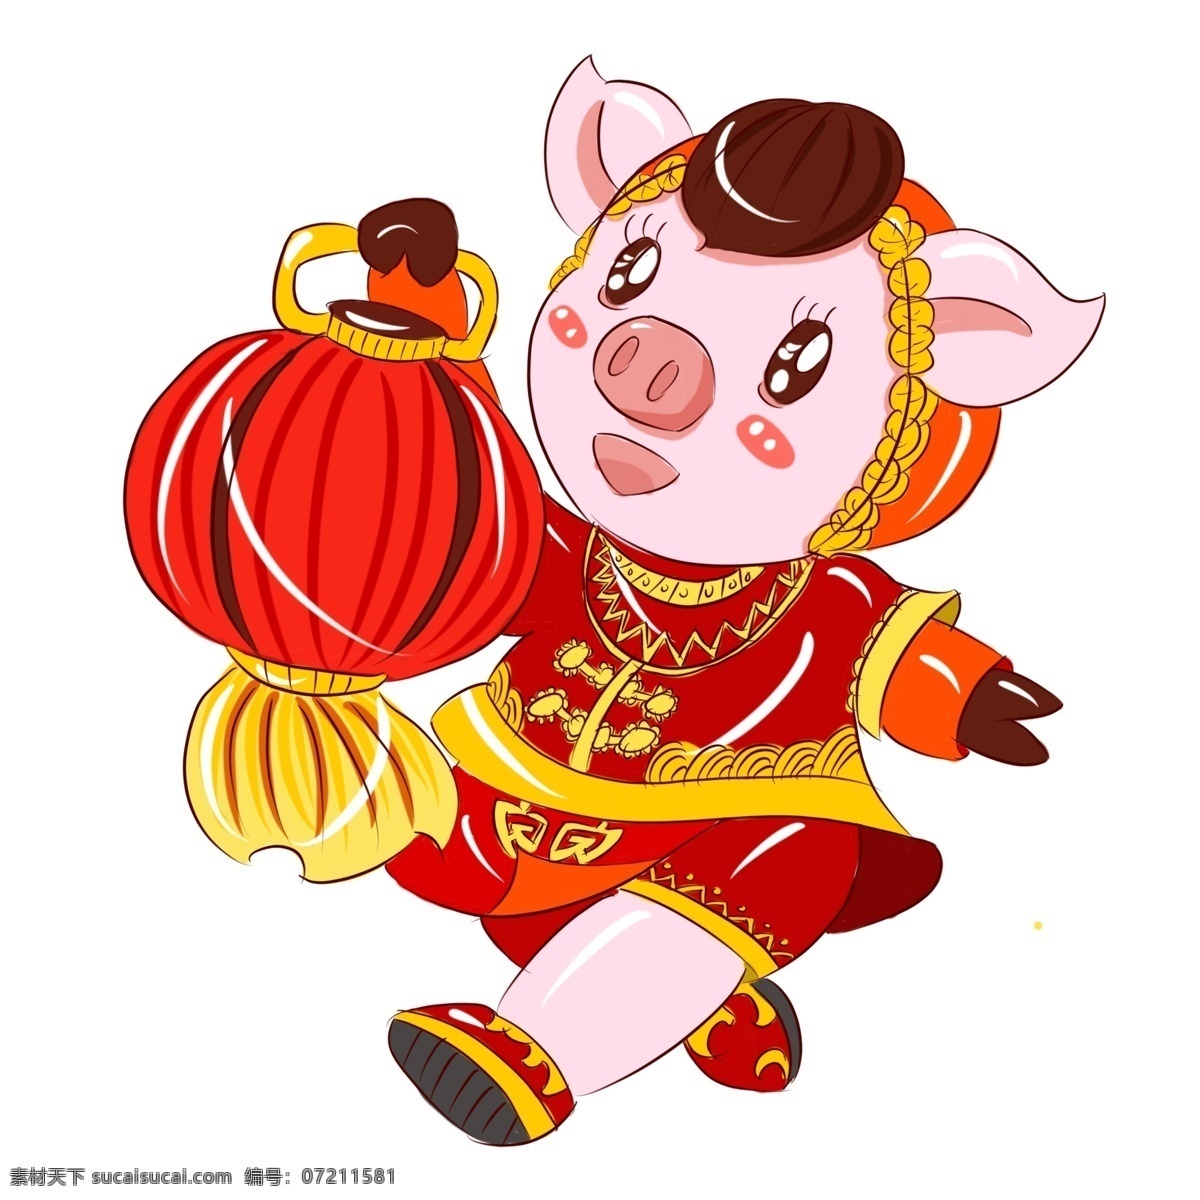 2019 猪年 新年 红红火火 手绘 卡通 吉祥 猪 卡通猪 手绘猪 吉祥猪 可爱动物 可爱猪猪 拜年 新年猪 亥猪